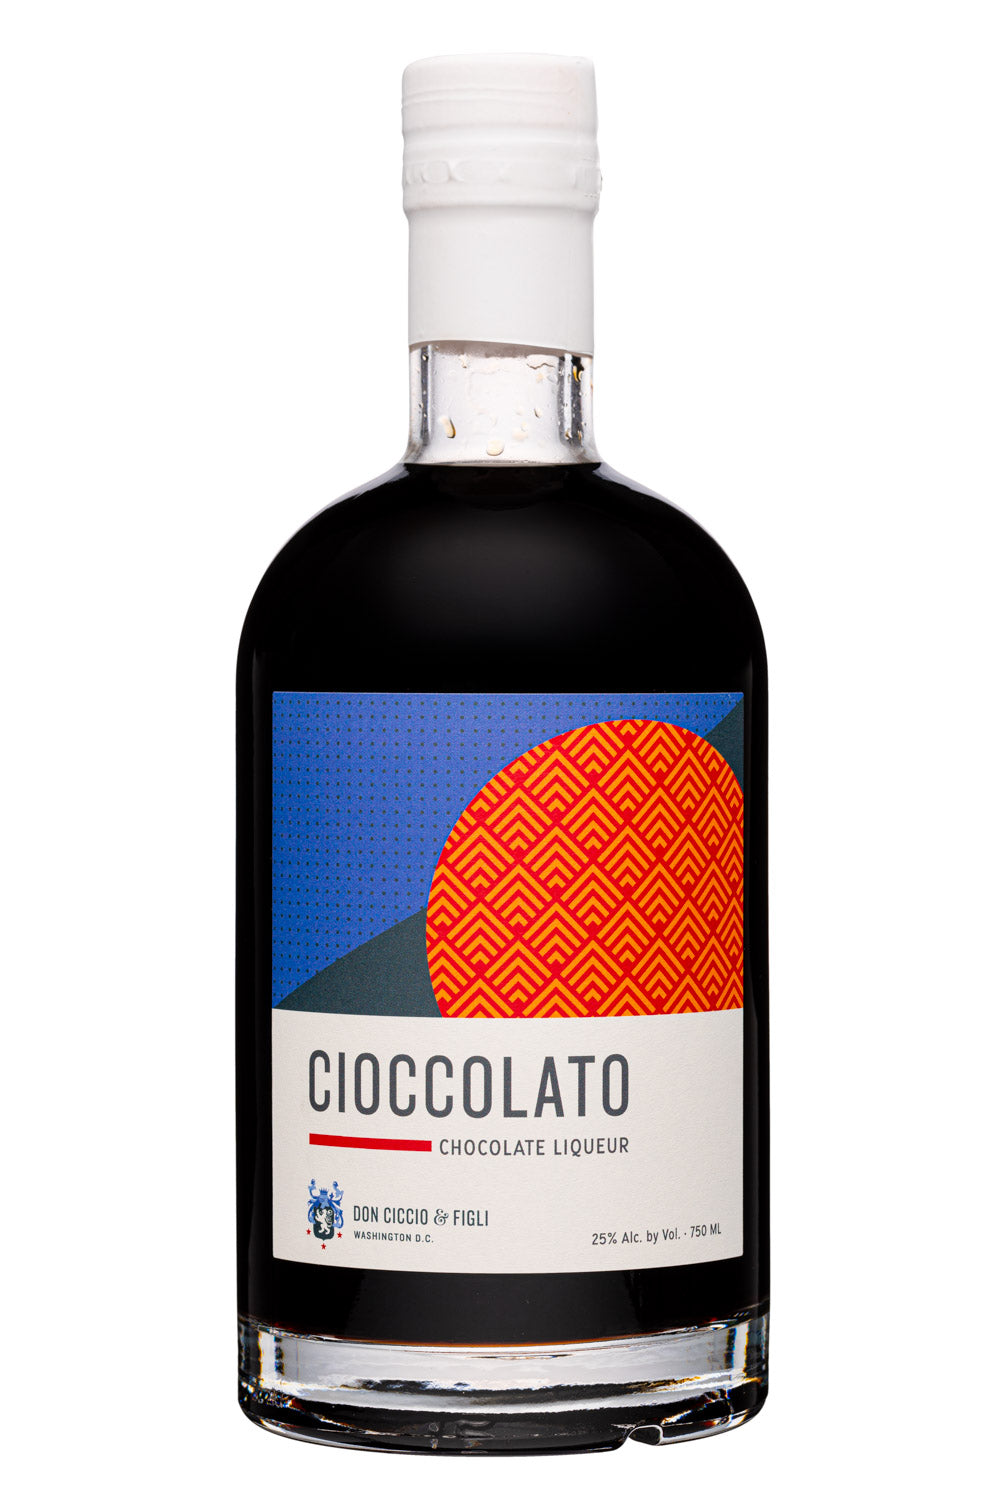 Don Ciccio & Figli Cioccolato Chocolate Liqueur 750ml